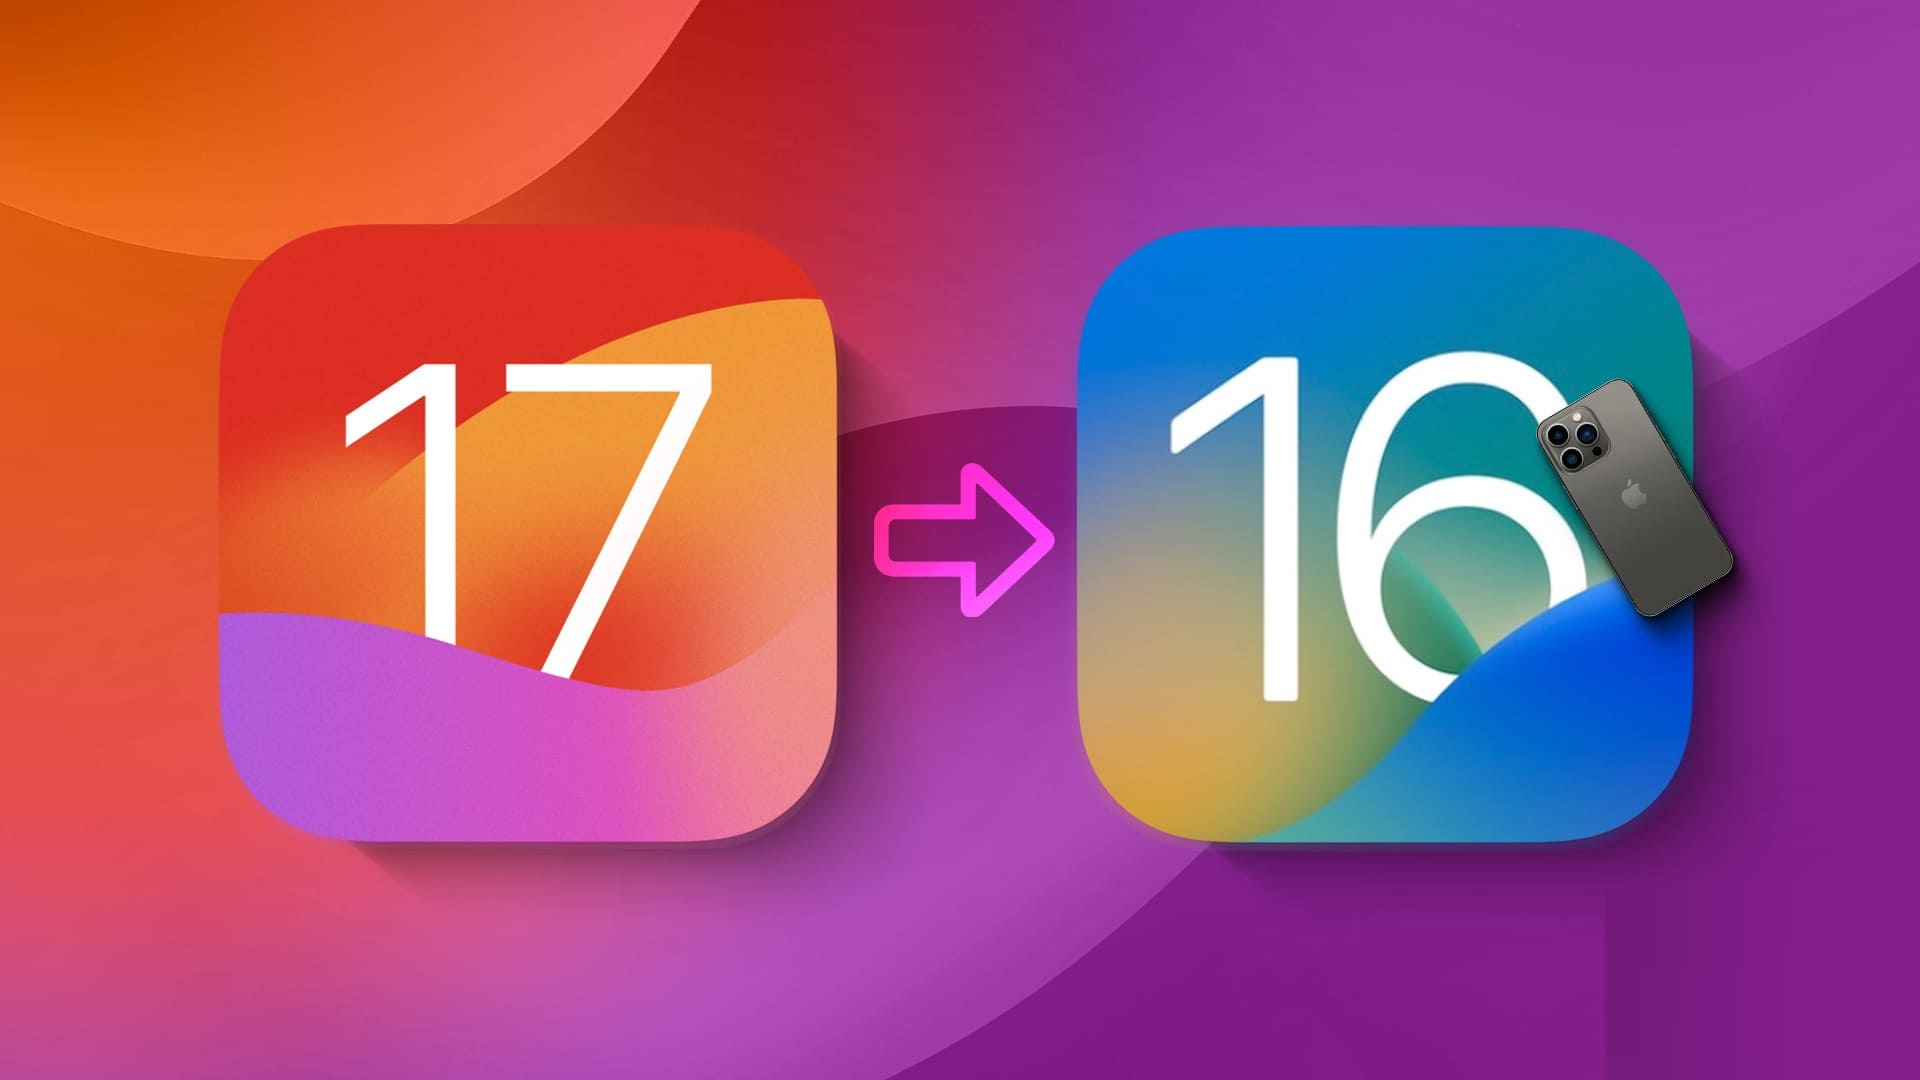 كيفية إزالة iOS 17 Developer Beta من iPhone - %categories